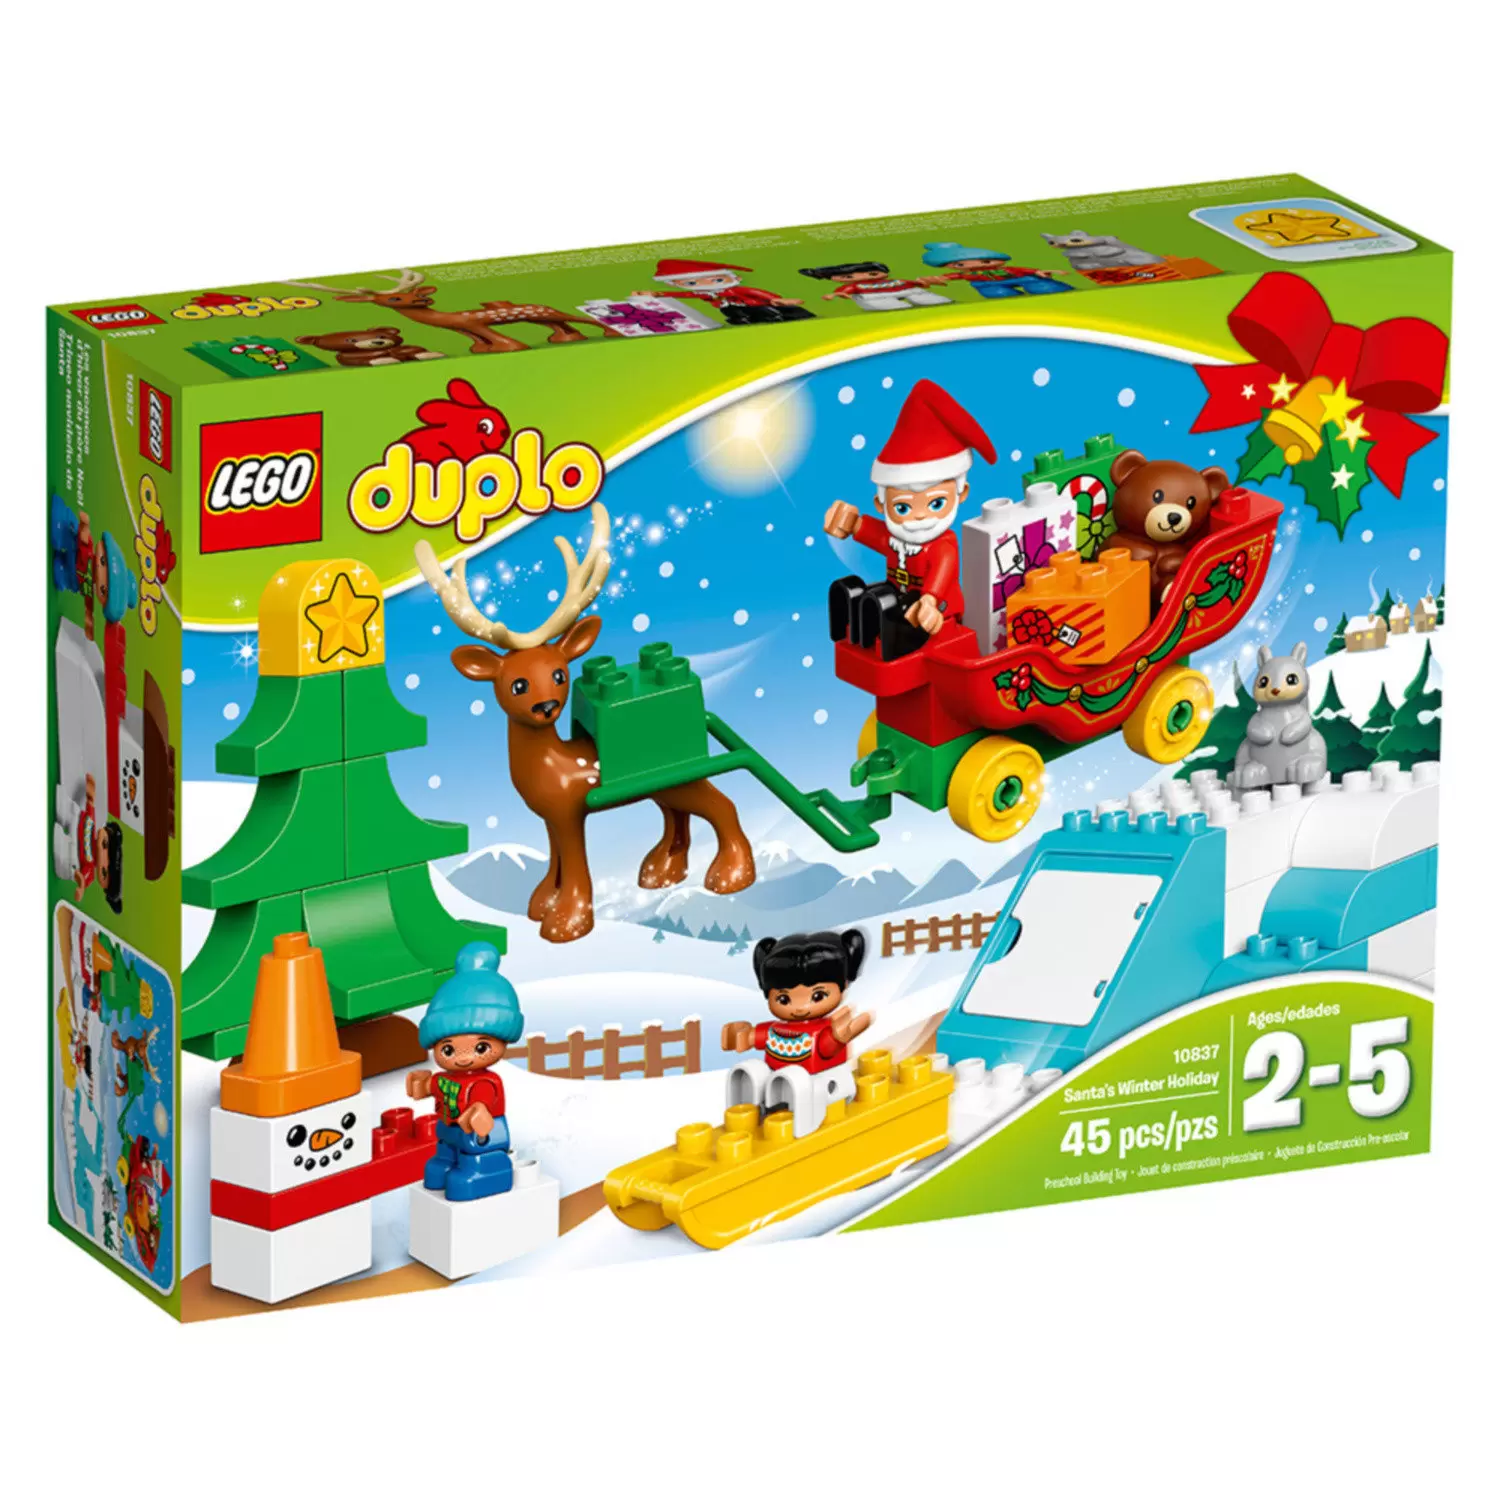 LEGO Duplo - Santa\'s winter holliday